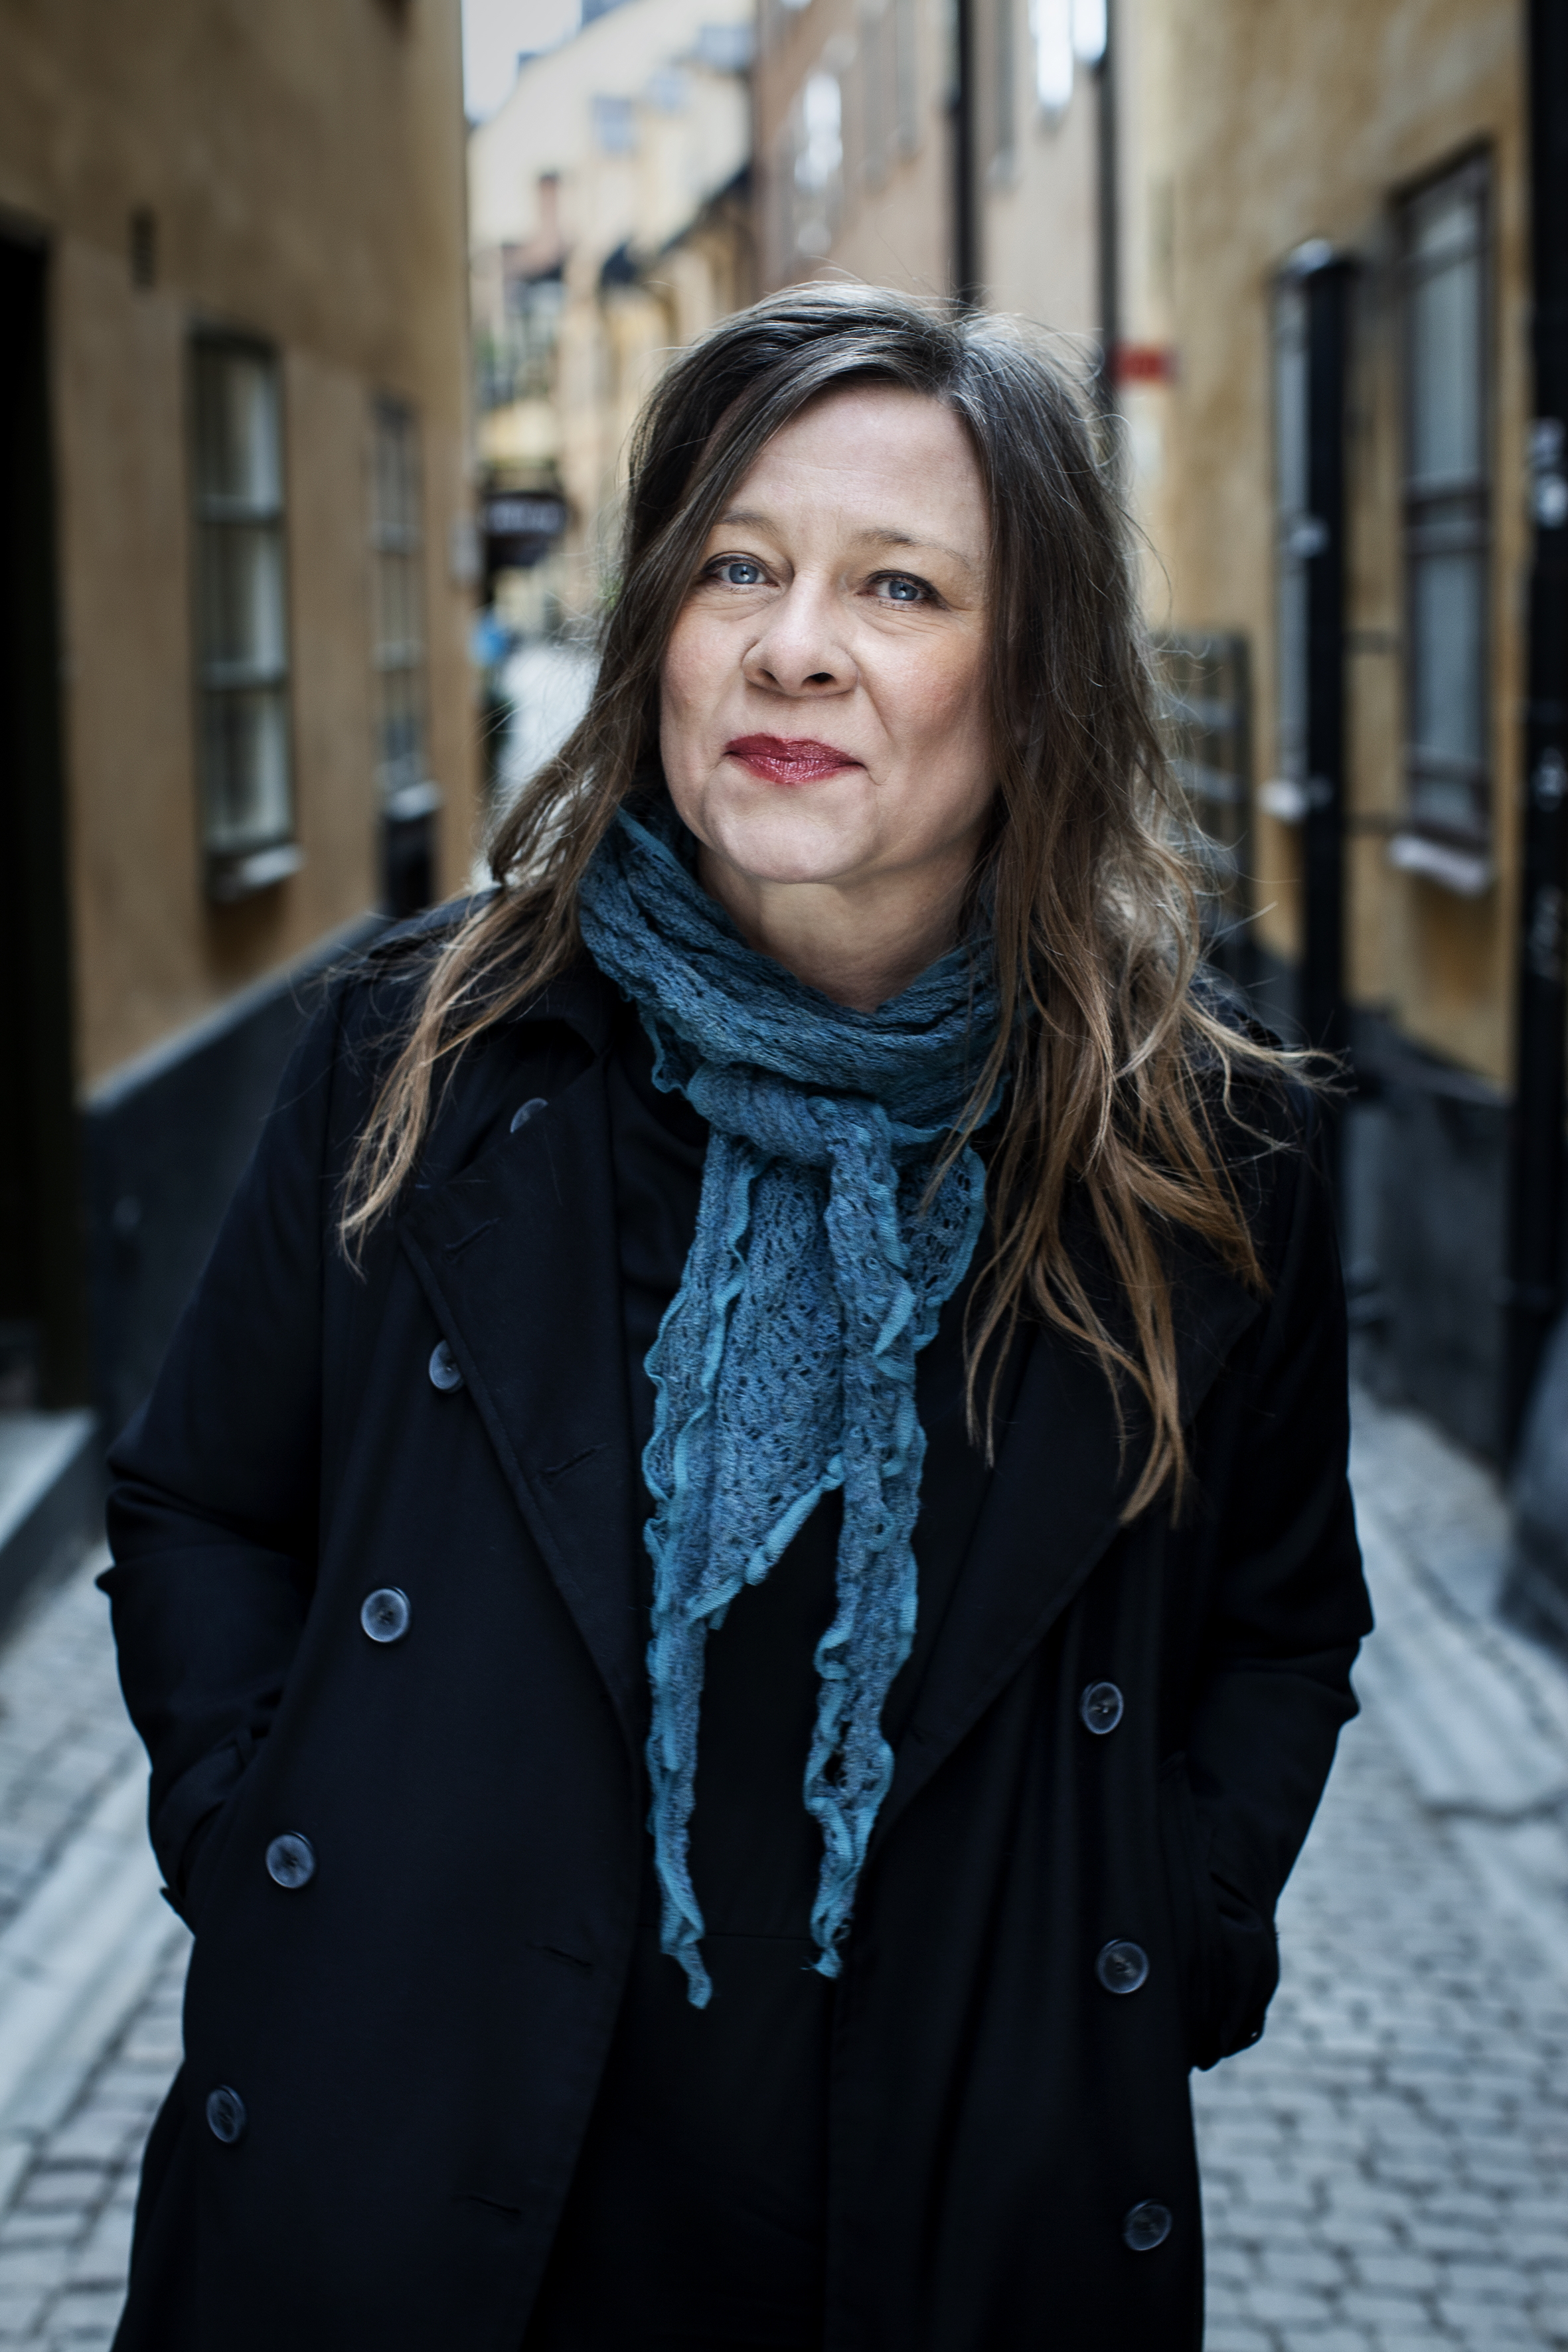 Inför "Puderdosor, mensskydd och cigaretter: kvinnors historia genom föremål", en föreläsning med historiker och författare Karin Carlsson.